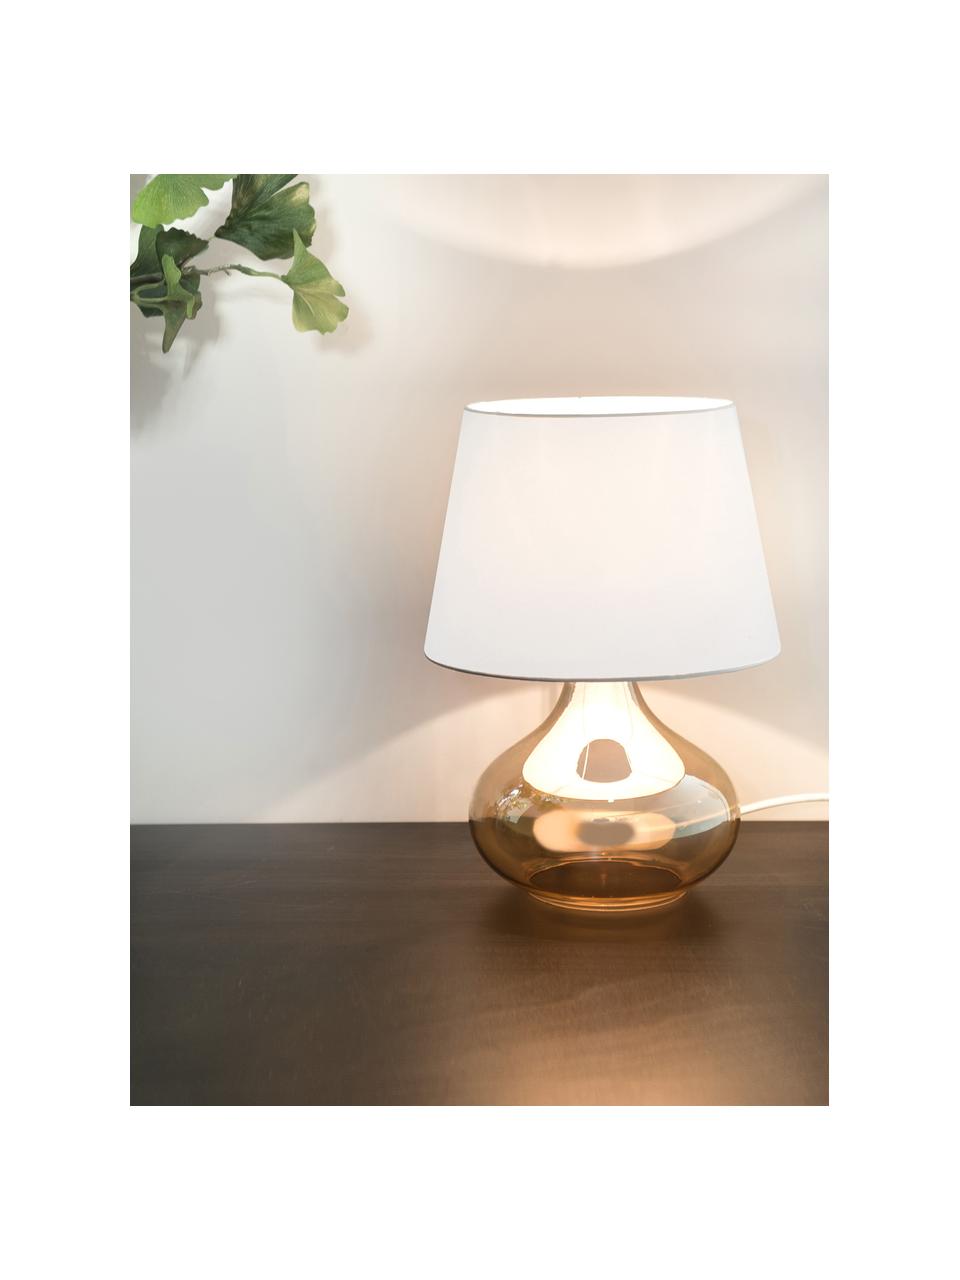 Tischlampe Cameron mit Glasfuß, Lampenschirm: Polyester, Lampenfuß: Glas, Weiß, Bernsteinfarben, Ø 18 x H 33 cm